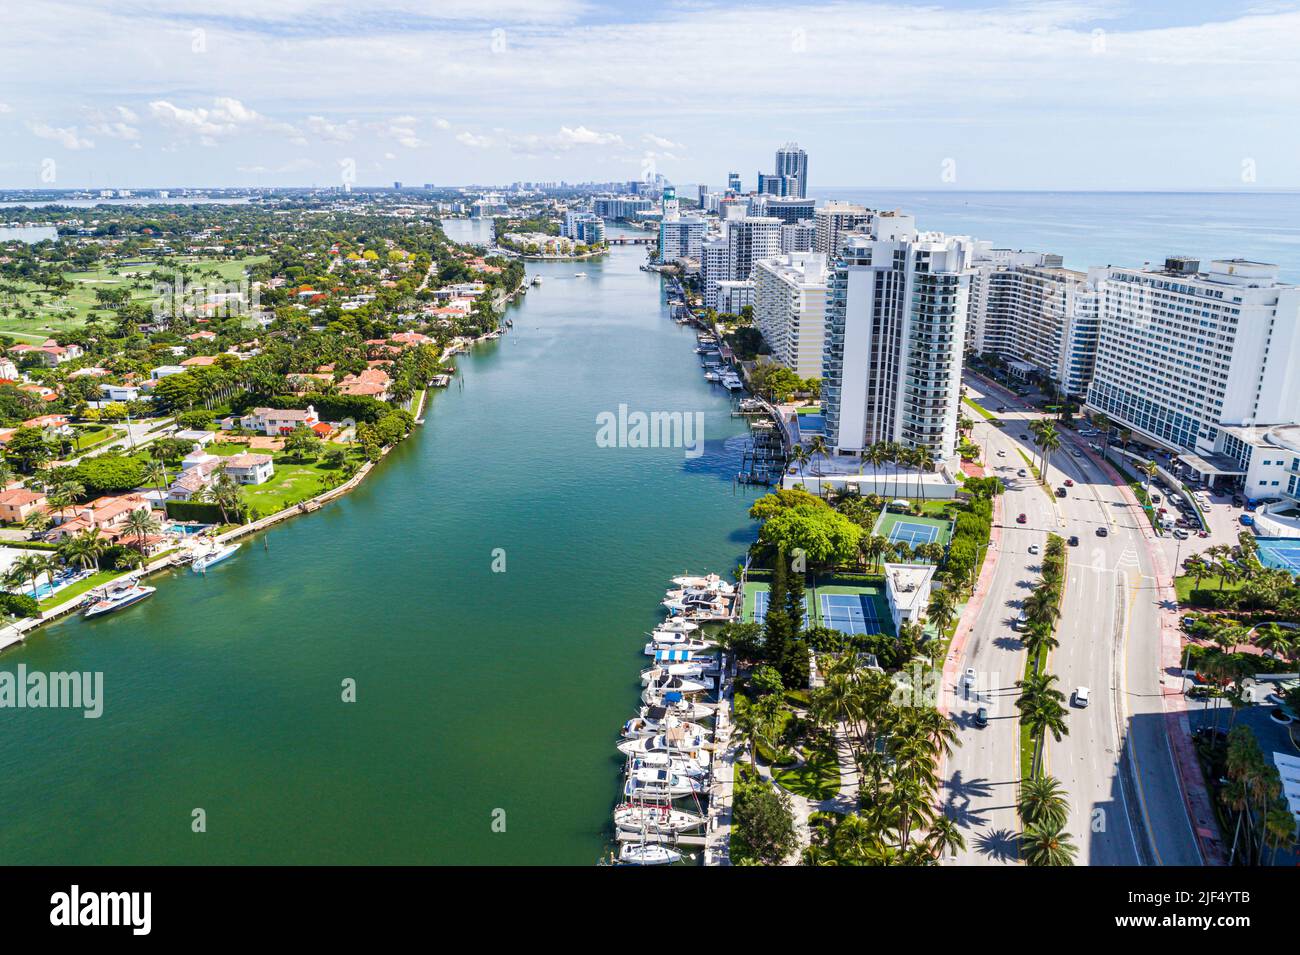 Miami Beach Florida, vista aérea desde arriba, Indian Creek Atlantic Ocean Collins Avenue edificios de apartamentos de gran altura, La Gorce Island Foto de stock